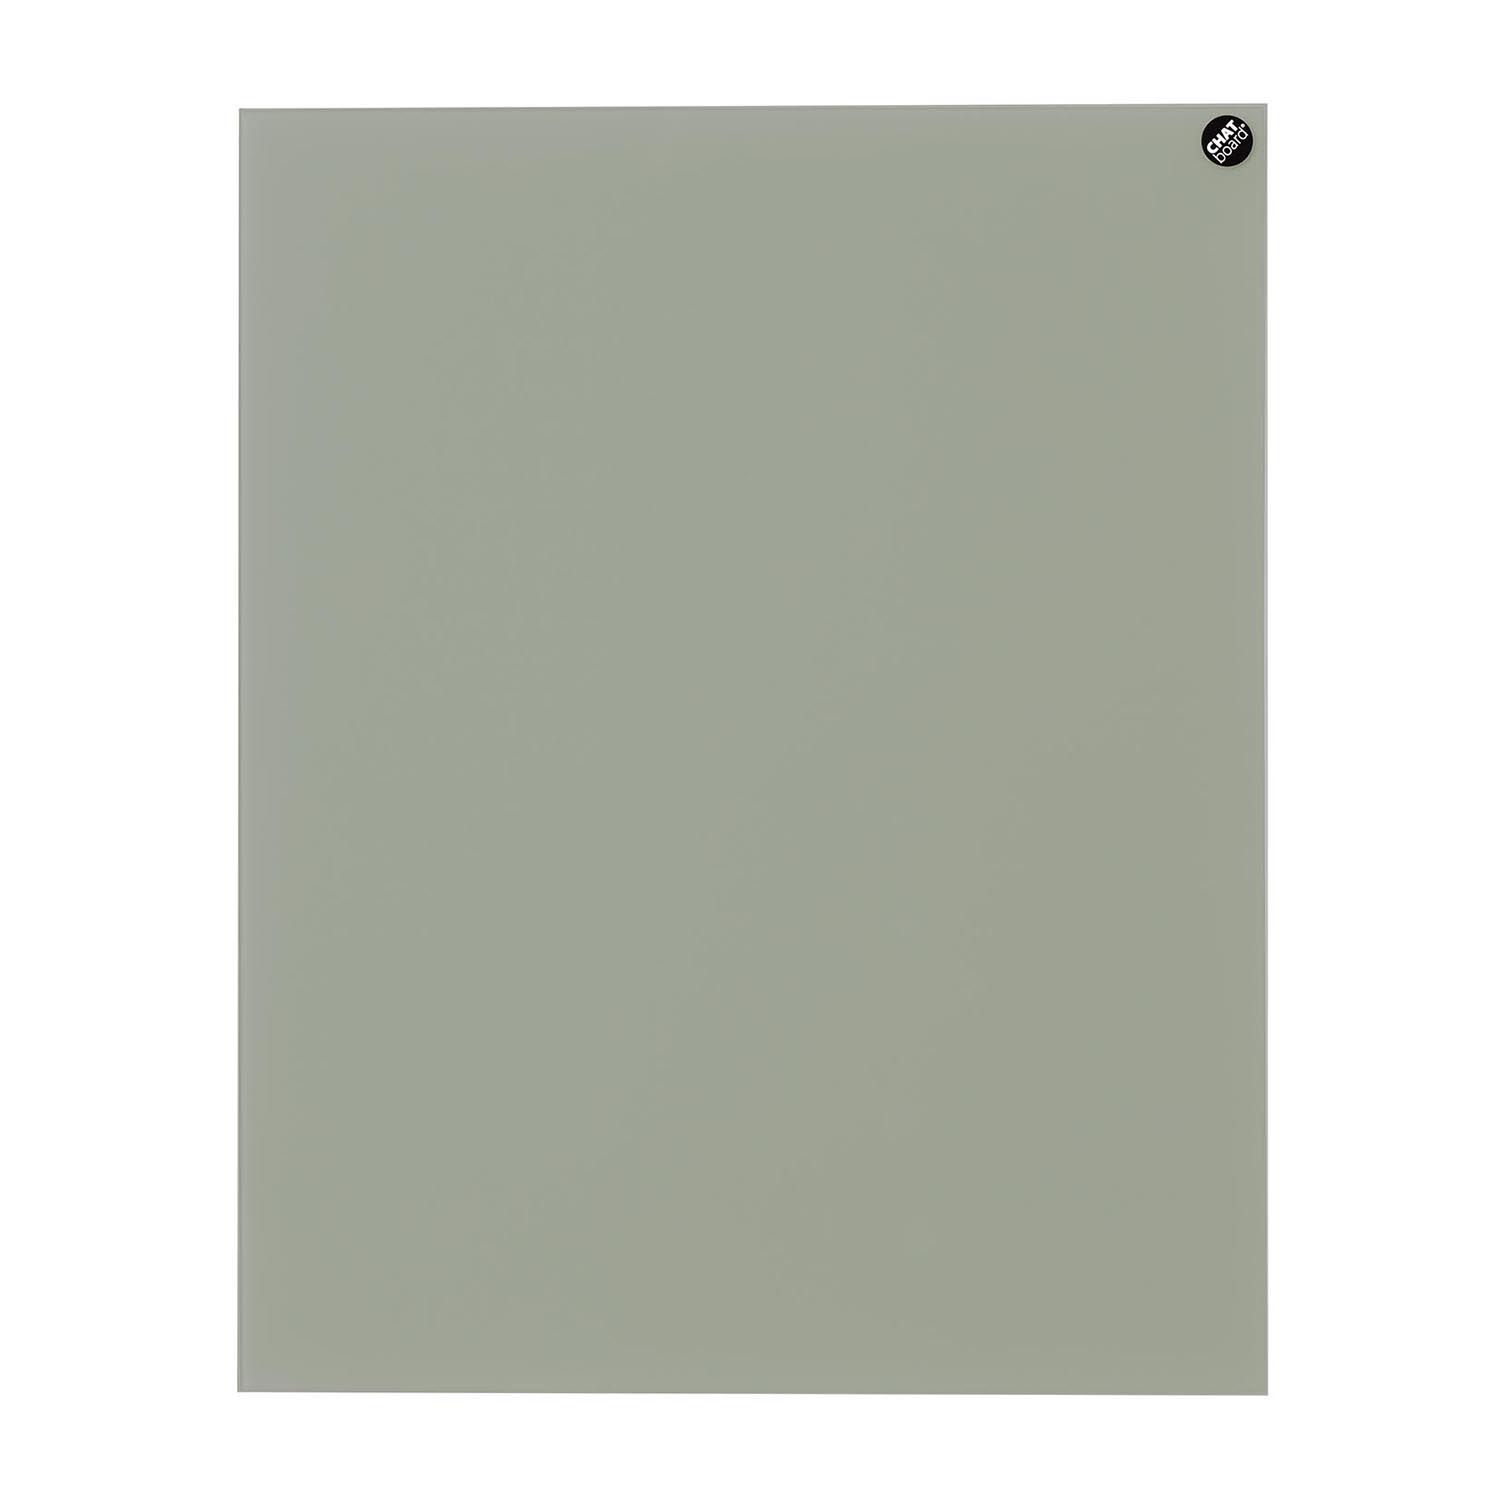 Elements Magnettafel, Grösse 150 x 120 cm, Ausrichtung vertikal, Glas pure white 14 mtpw von Chat Board